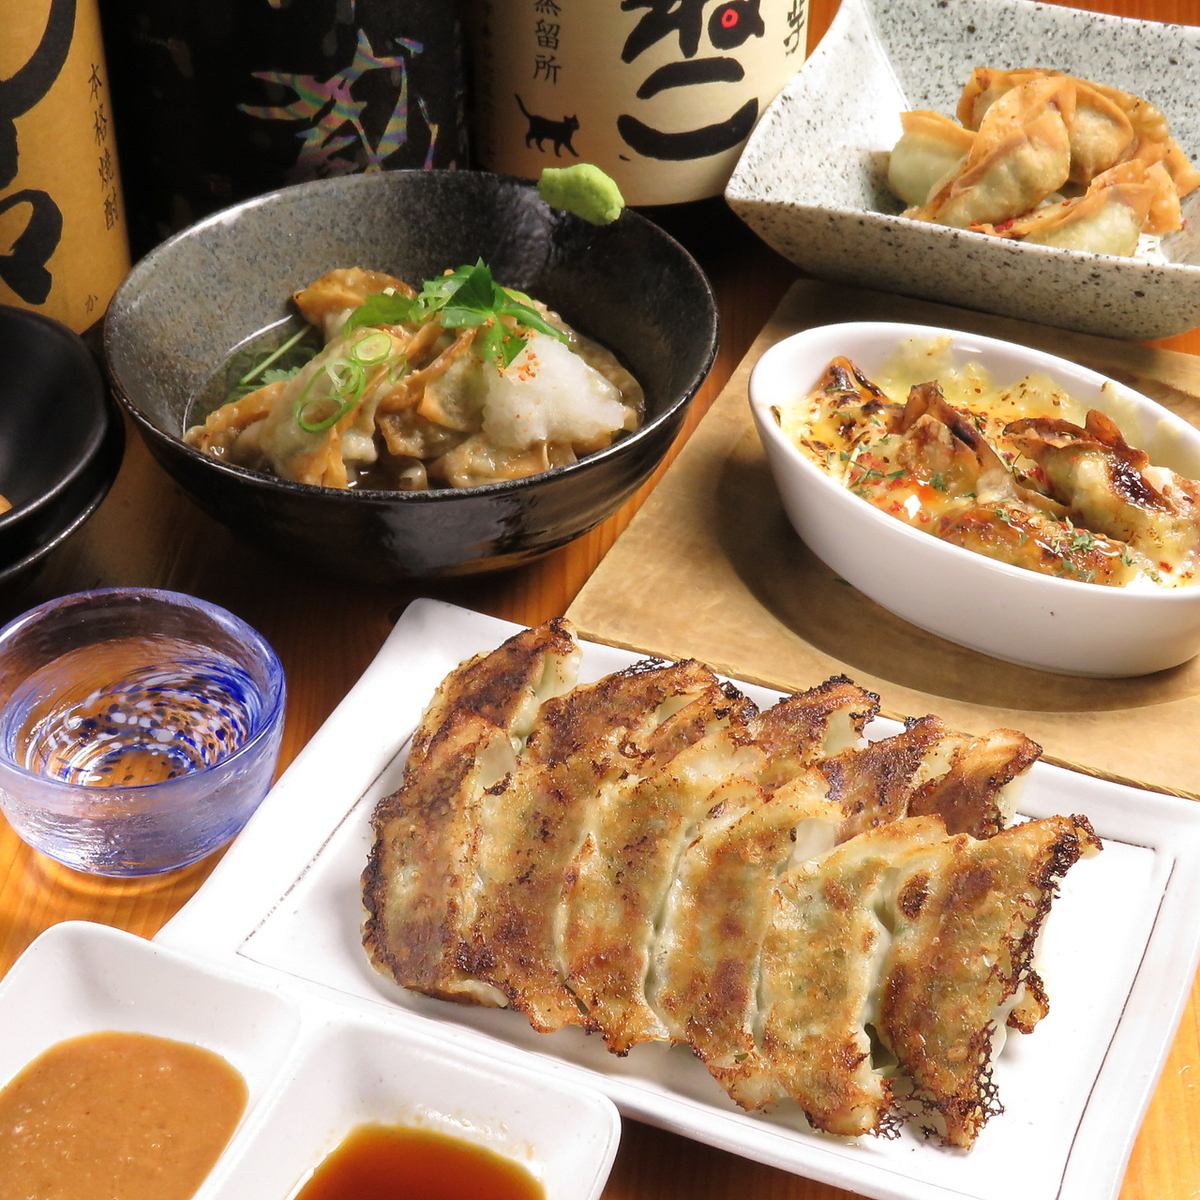 [Usumatsu special all-you-can-eat dumplings] Popular all-you-can-eat 4 kinds of dumplings ★ 2700 yen